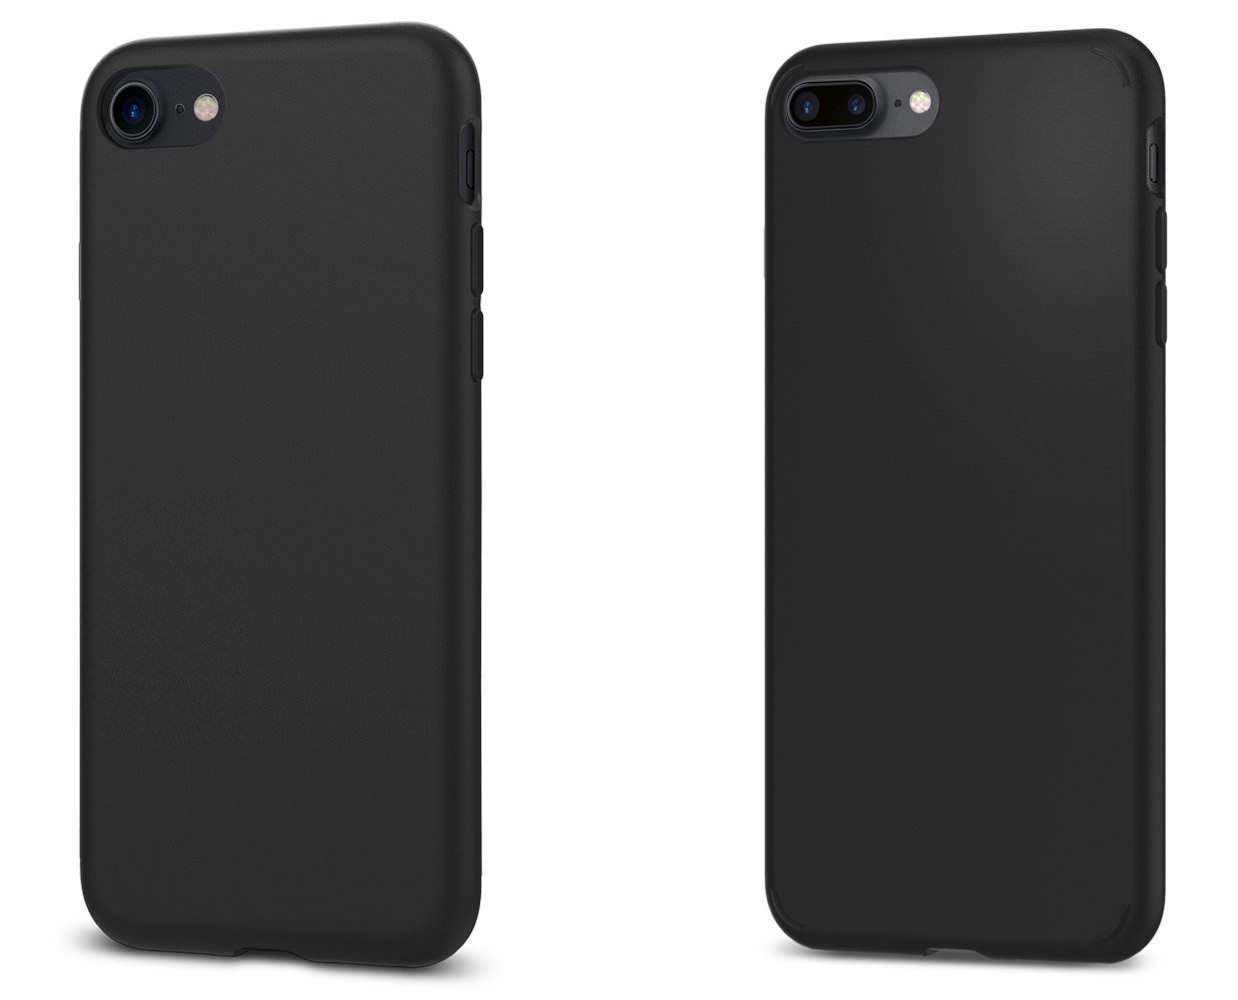 初回限定 オフ Spigen Iphone 7 7 Plus 用ケース リキッド クリスタル に新カラーの マット ブラック を追加 Corriente Top